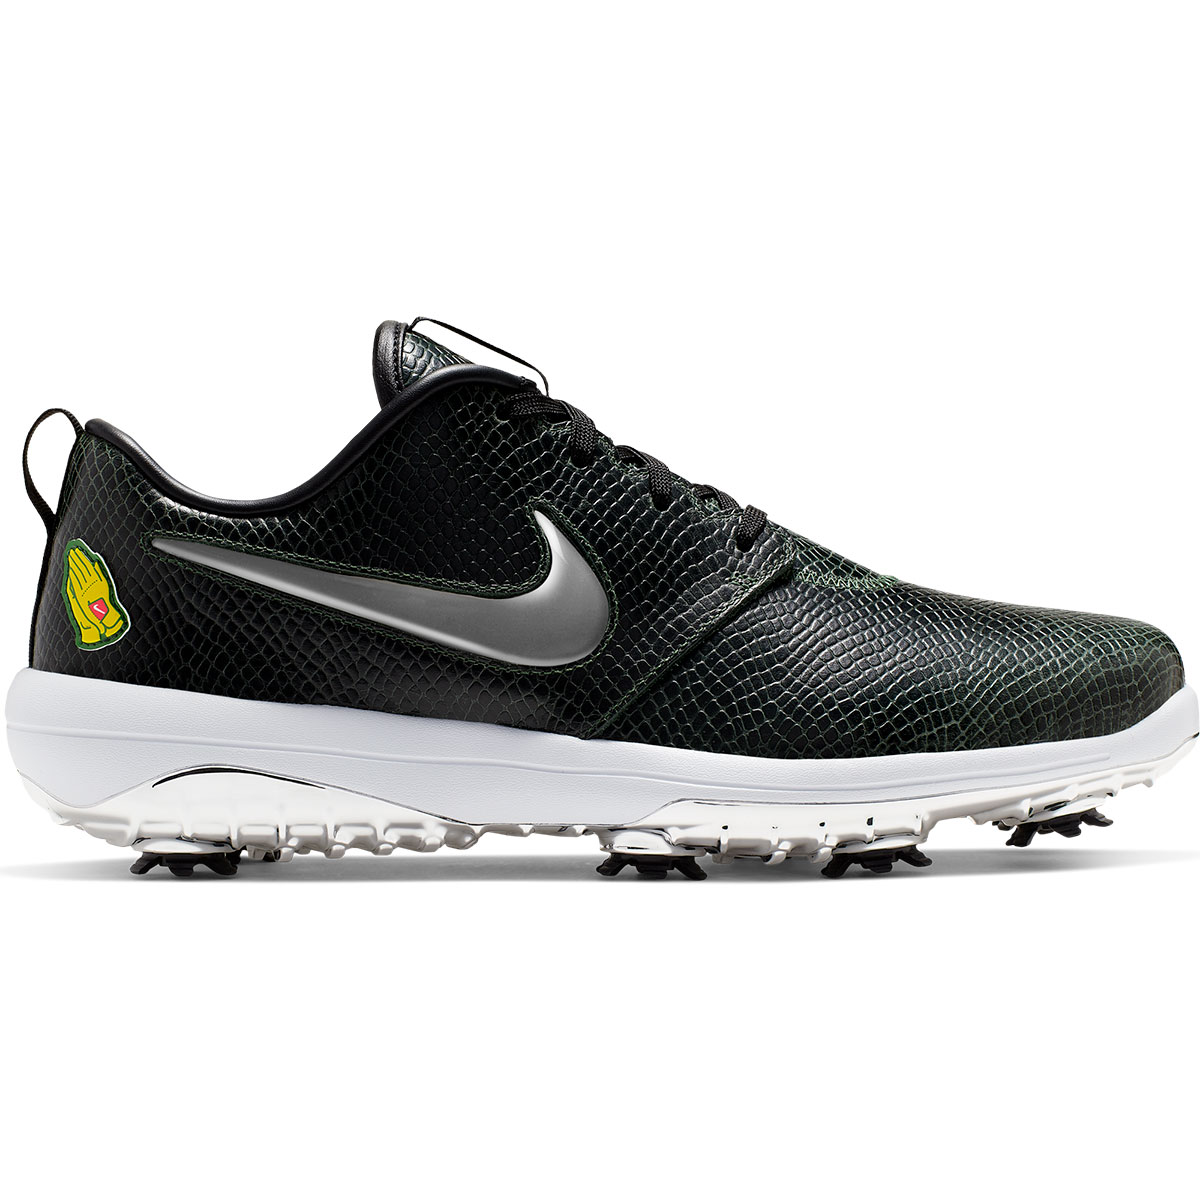 Nike Golf Roshe G Tour NRG Shoes from 